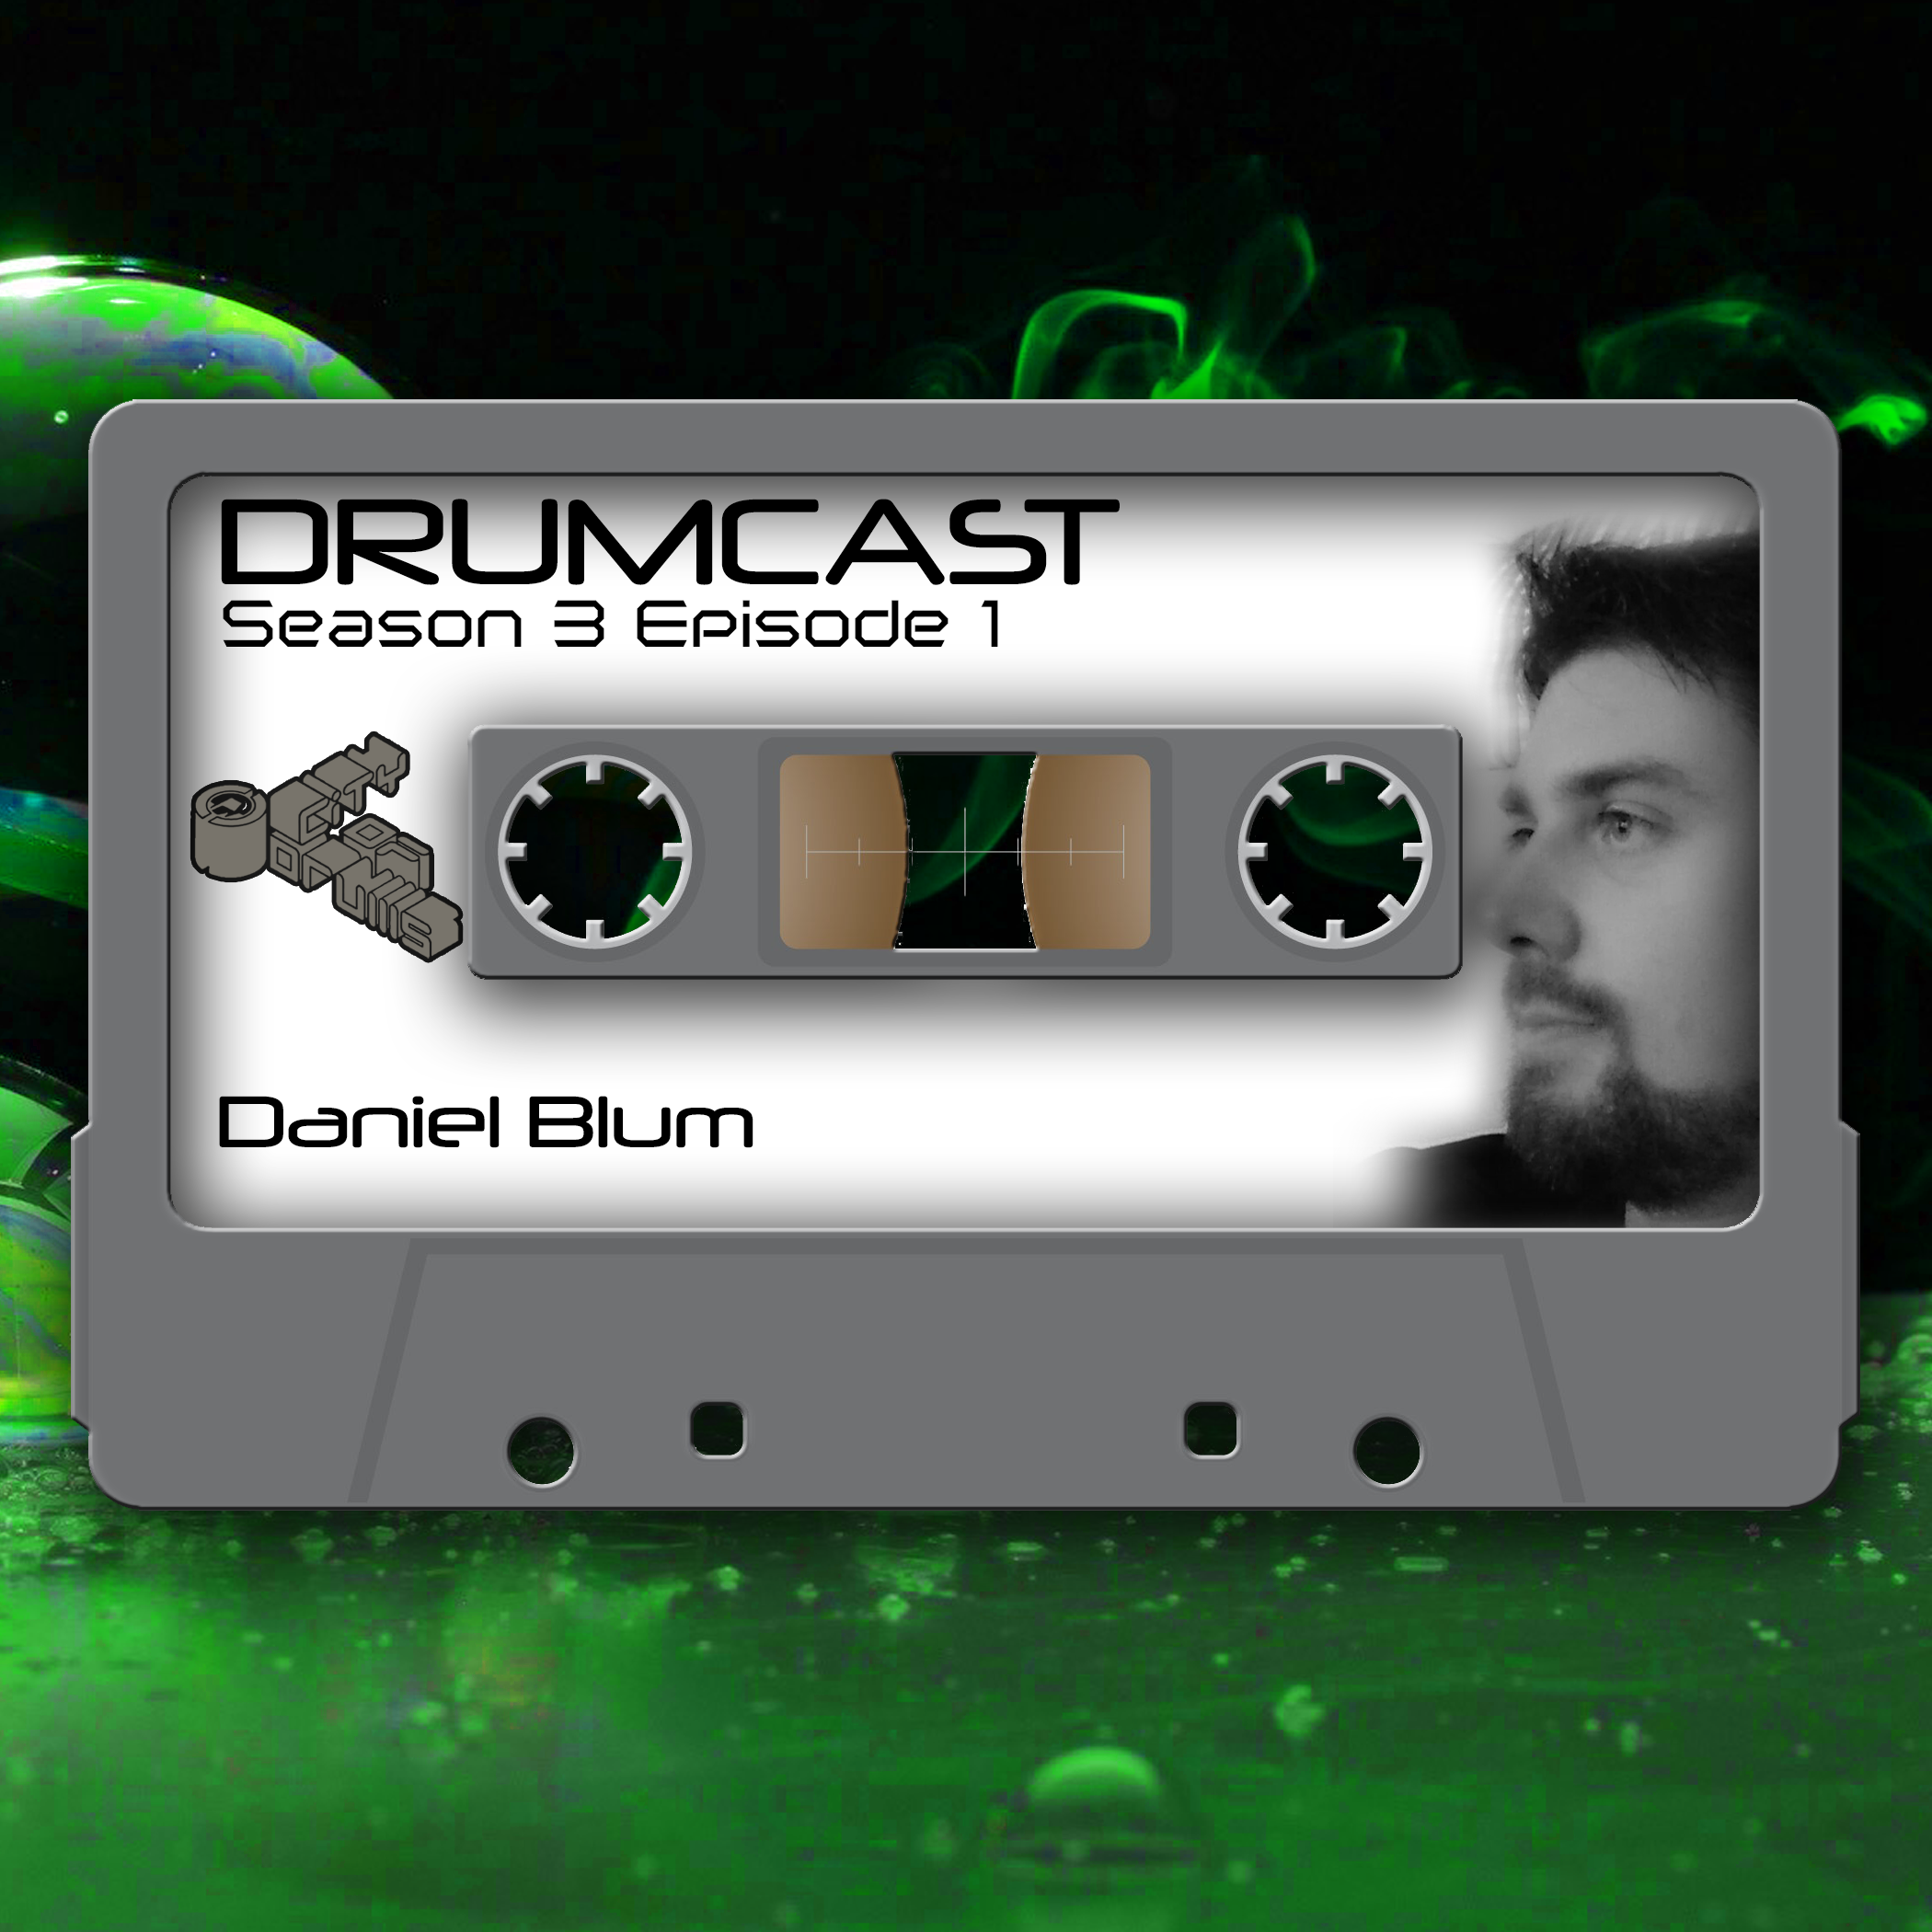 DRUMCAST Season 3 Episode 1 mit Daniel Blum! 17